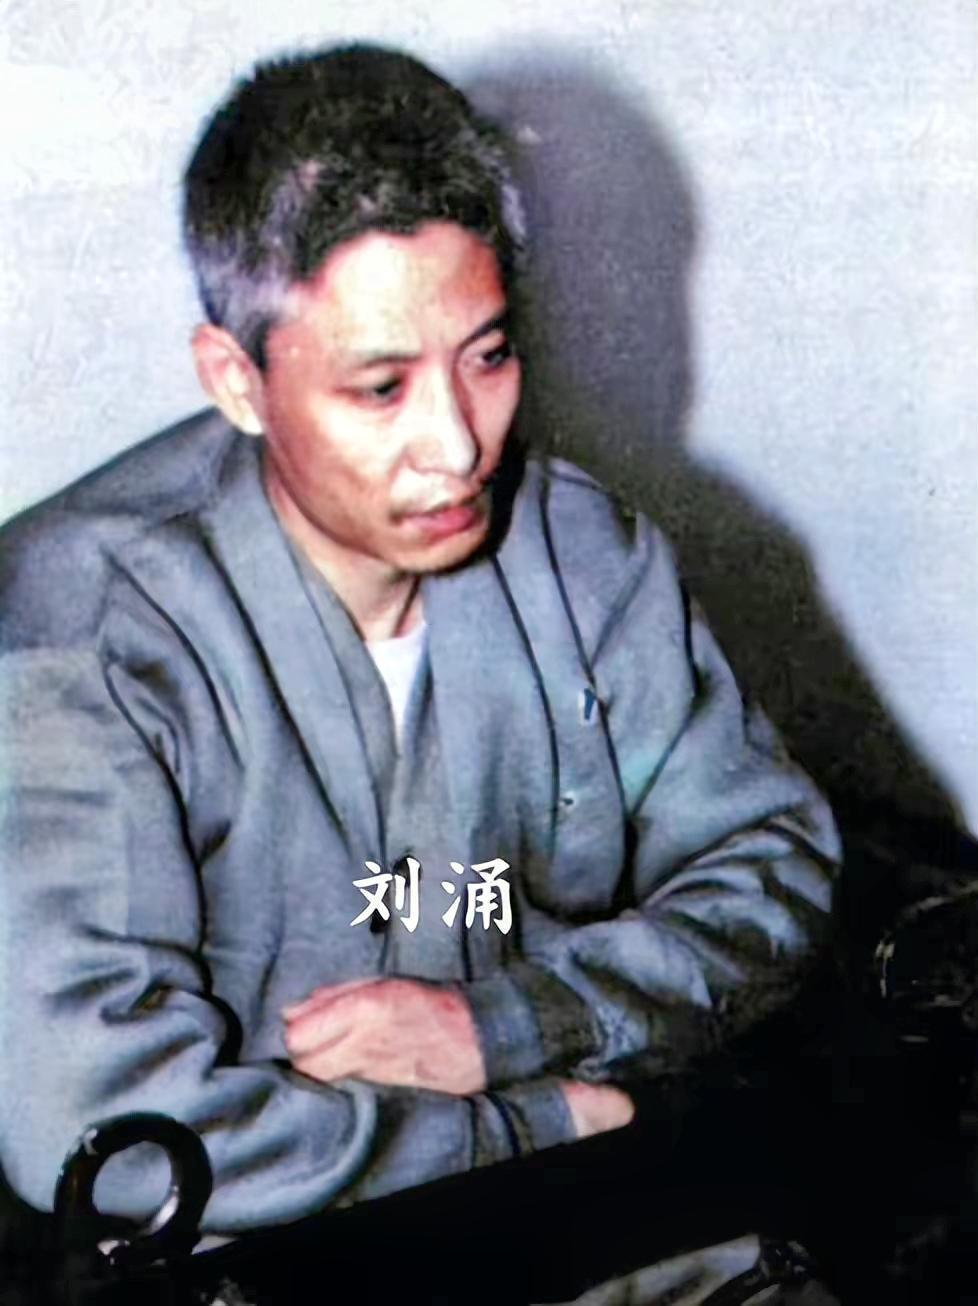 2000年,沈阳黑帮刘涌入狱,14名律师帮他减刑,最终结局如何?